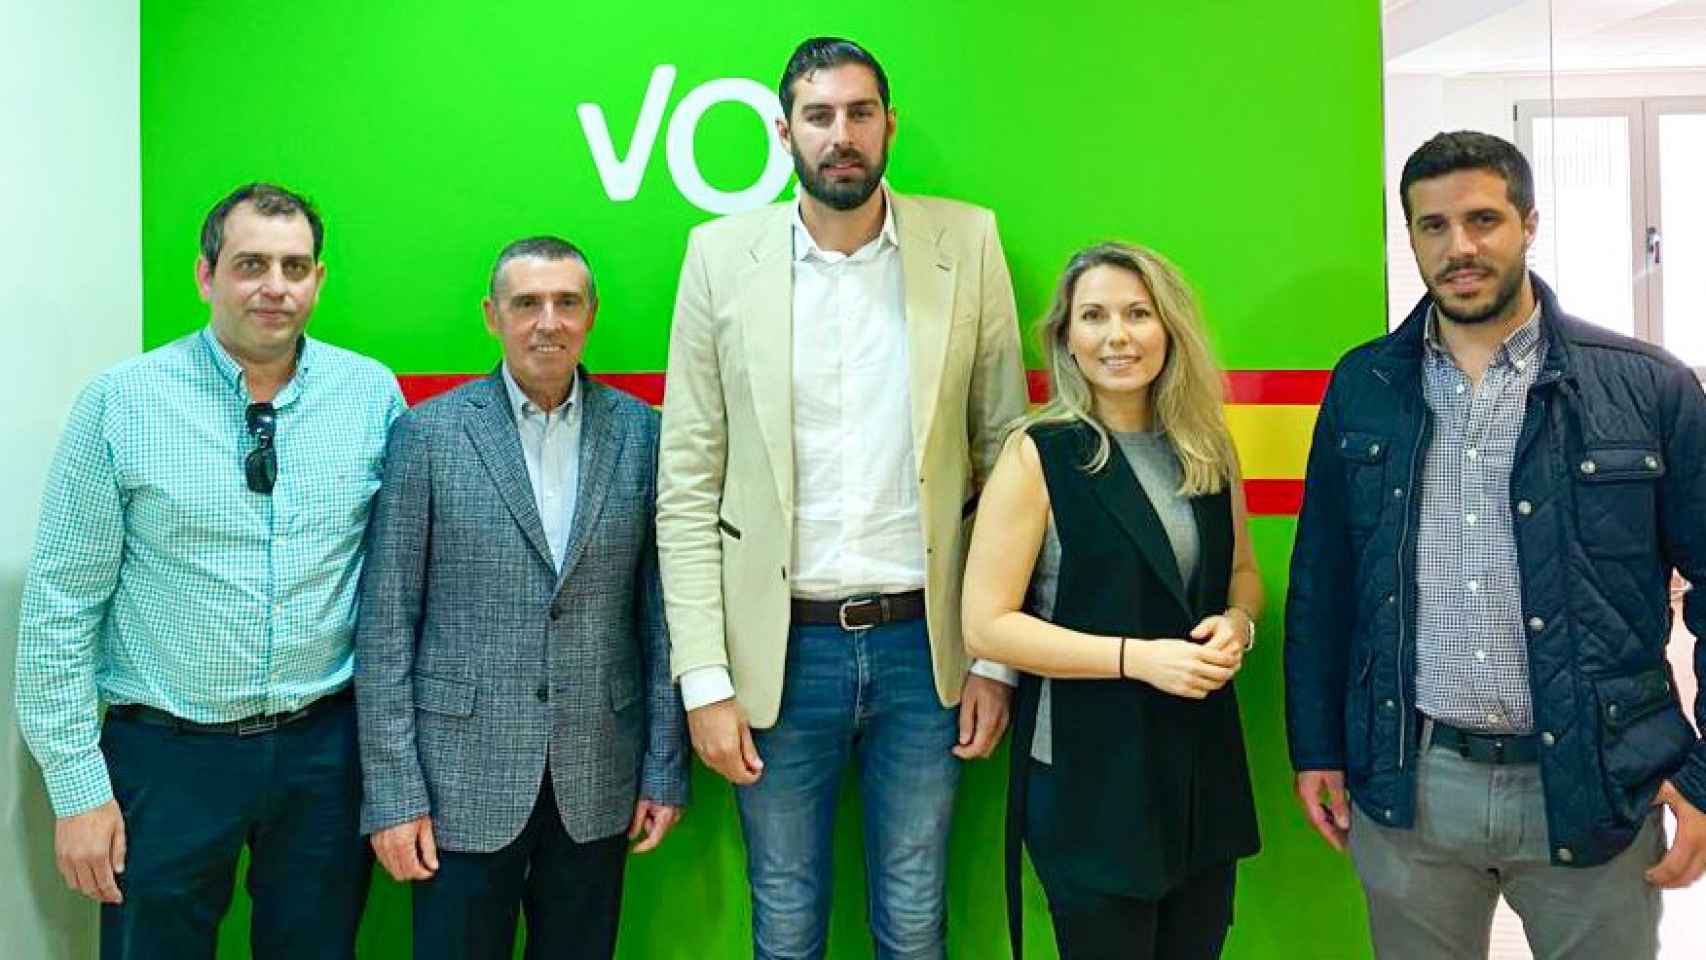 Imagen que los miembros de la Fundación Ingenio difundieron tras reunirse con Vox, en la precampaña de las elecciones autonómicas de Murcia.